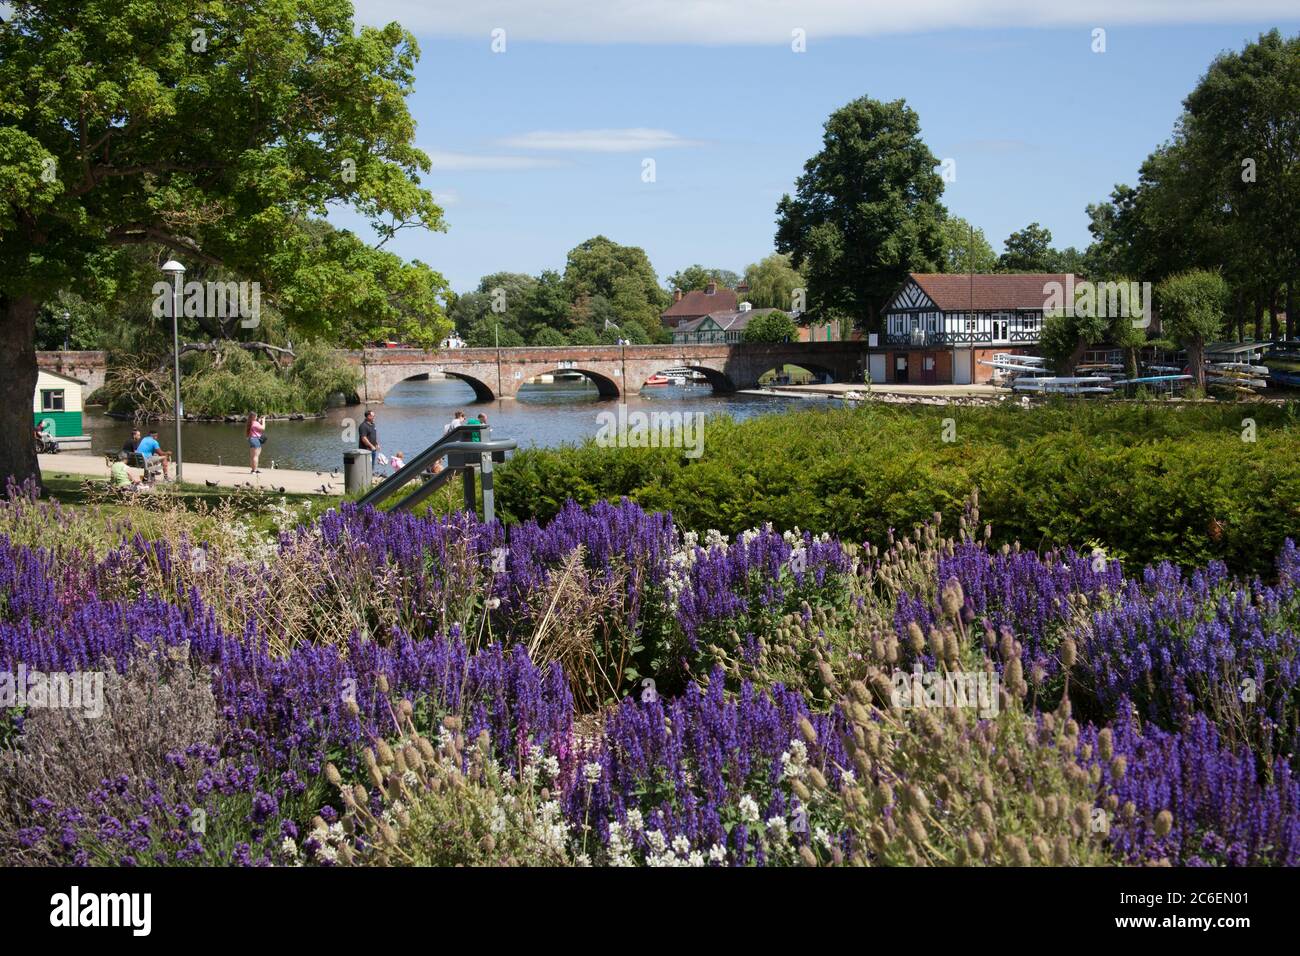 Vues de Bridge foot au-dessus de la rivière Avon à Stratford upon Avon dans le Warwickshire au Royaume-Uni prises le 22 juin 2020 Banque D'Images